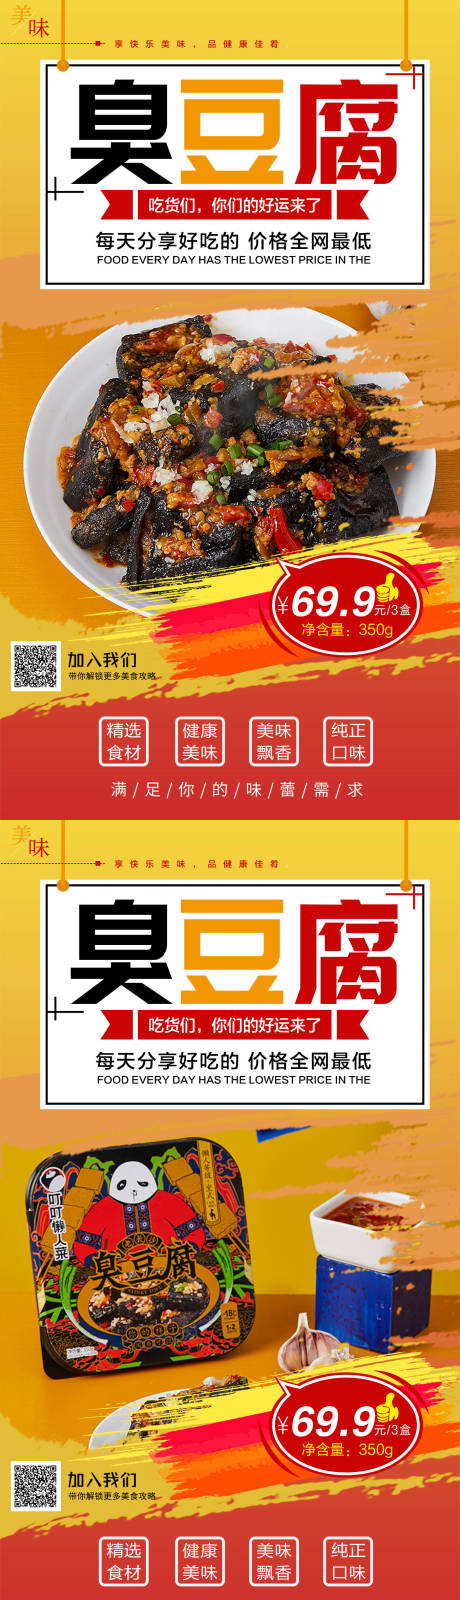 臭豆腐美食系列海报